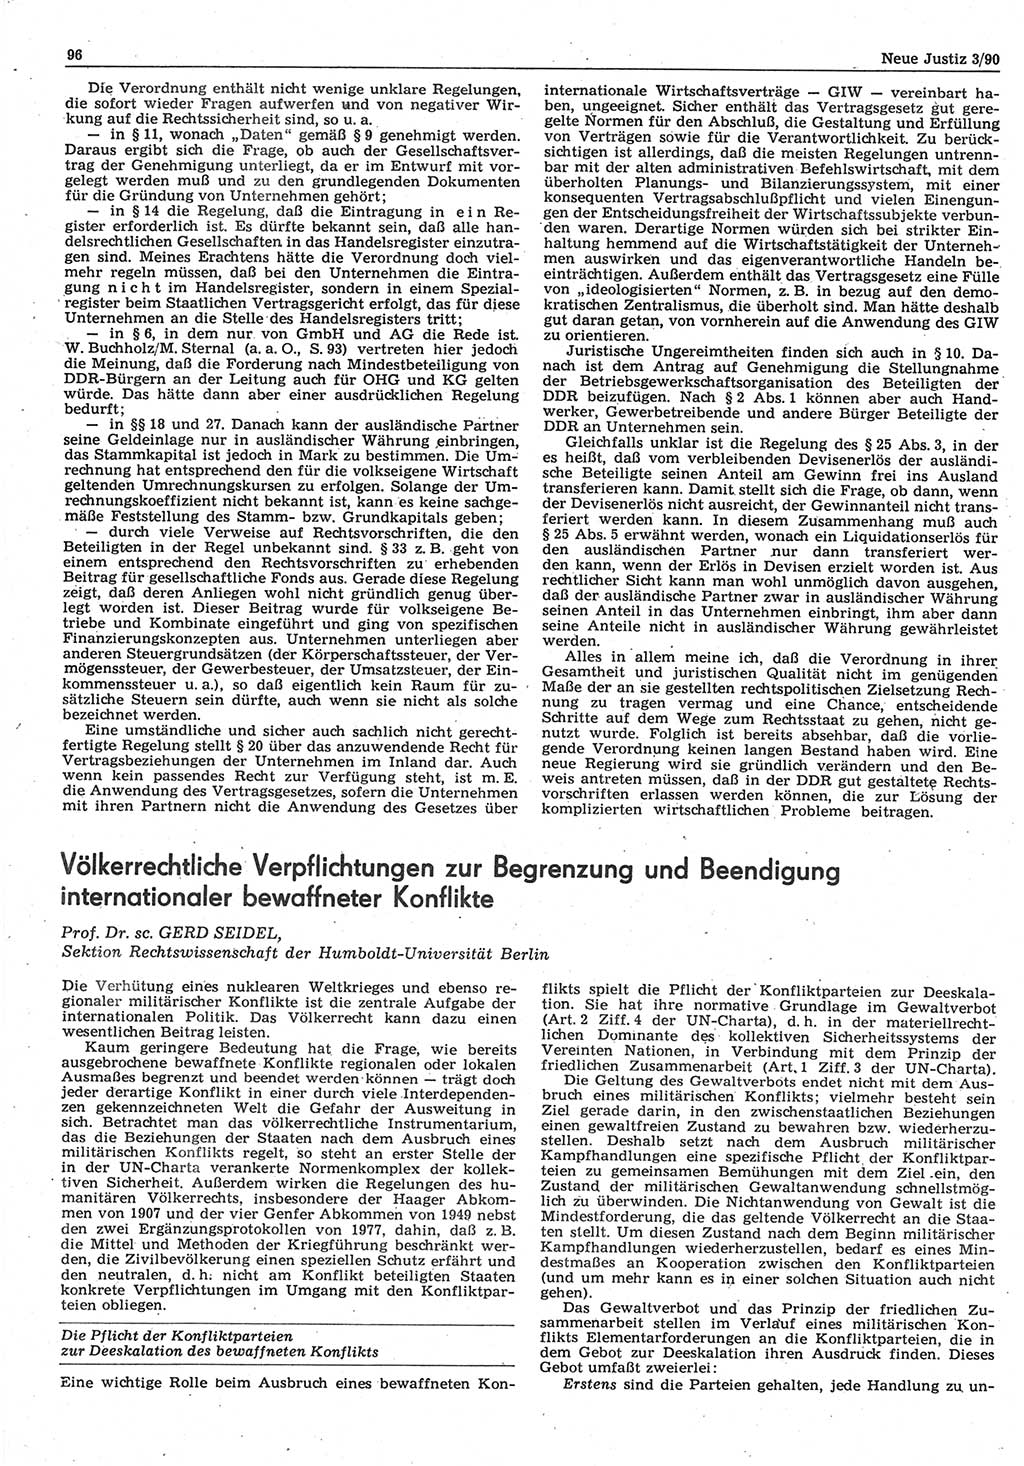 Neue Justiz (NJ), Zeitschrift für Rechtsetzung und Rechtsanwendung [Deutsche Demokratische Republik (DDR)], 44. Jahrgang 1990, Seite 96 (NJ DDR 1990, S. 96)